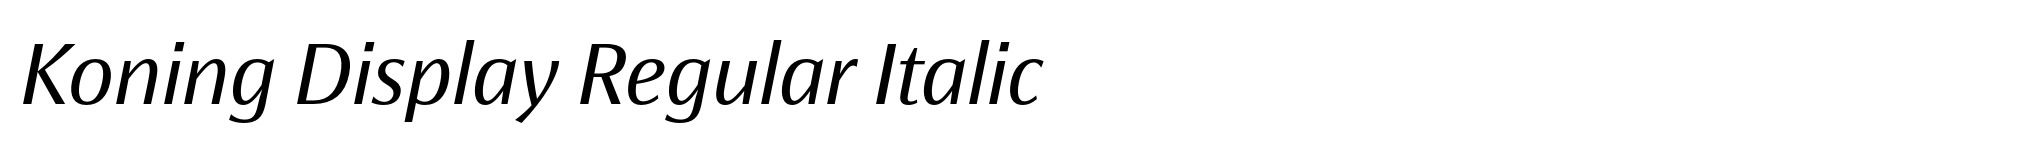 Koning Display Regular Italic image